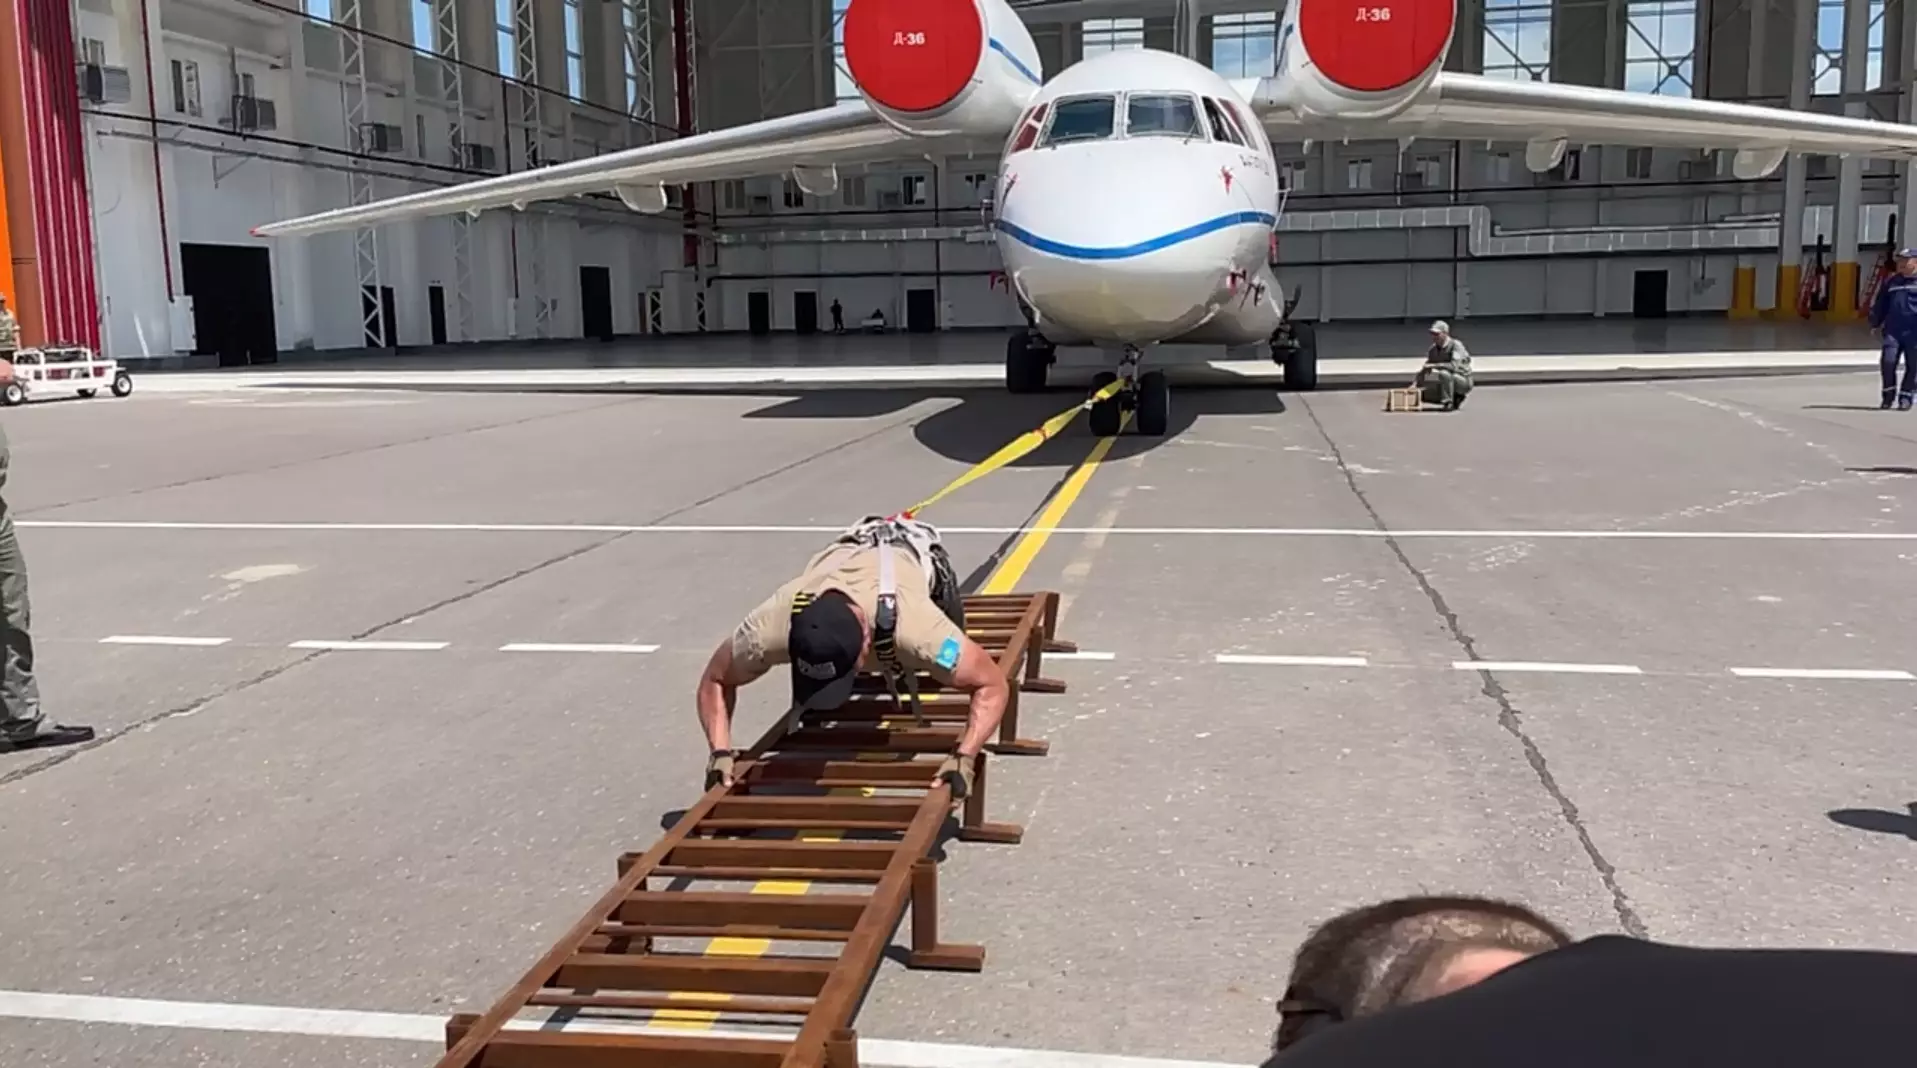 Полицейский Казахстана установил свой пятый мировой рекорд по перетягиванию самолета